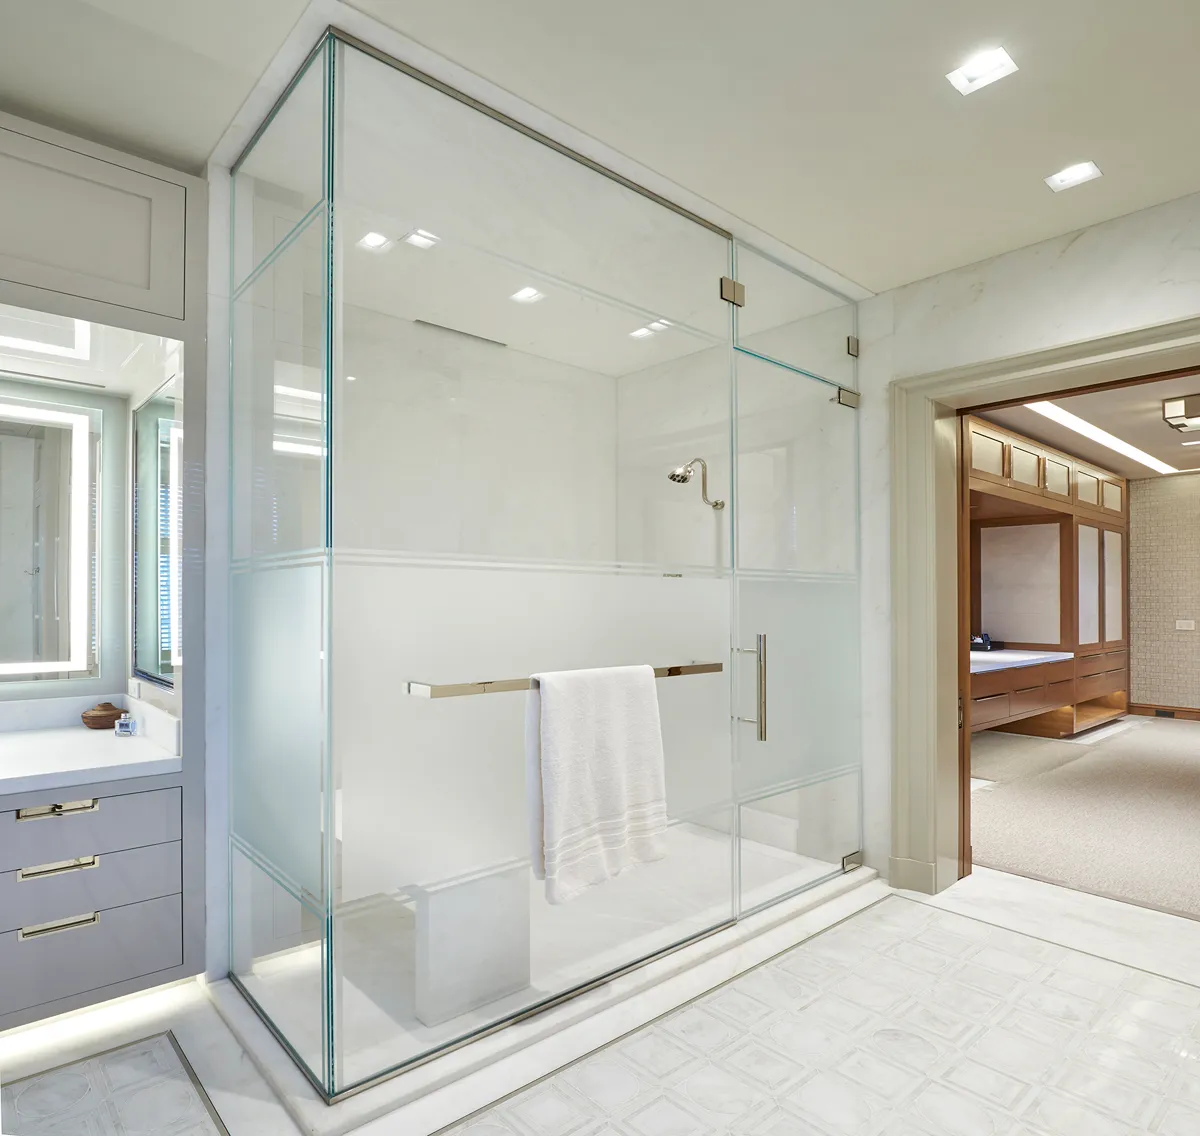 Lắp đặt vách kính phủ mờ cho phòng tắm, đảm bảo sự riêng tư và khô ráo, sạch sẽ cho không gian.